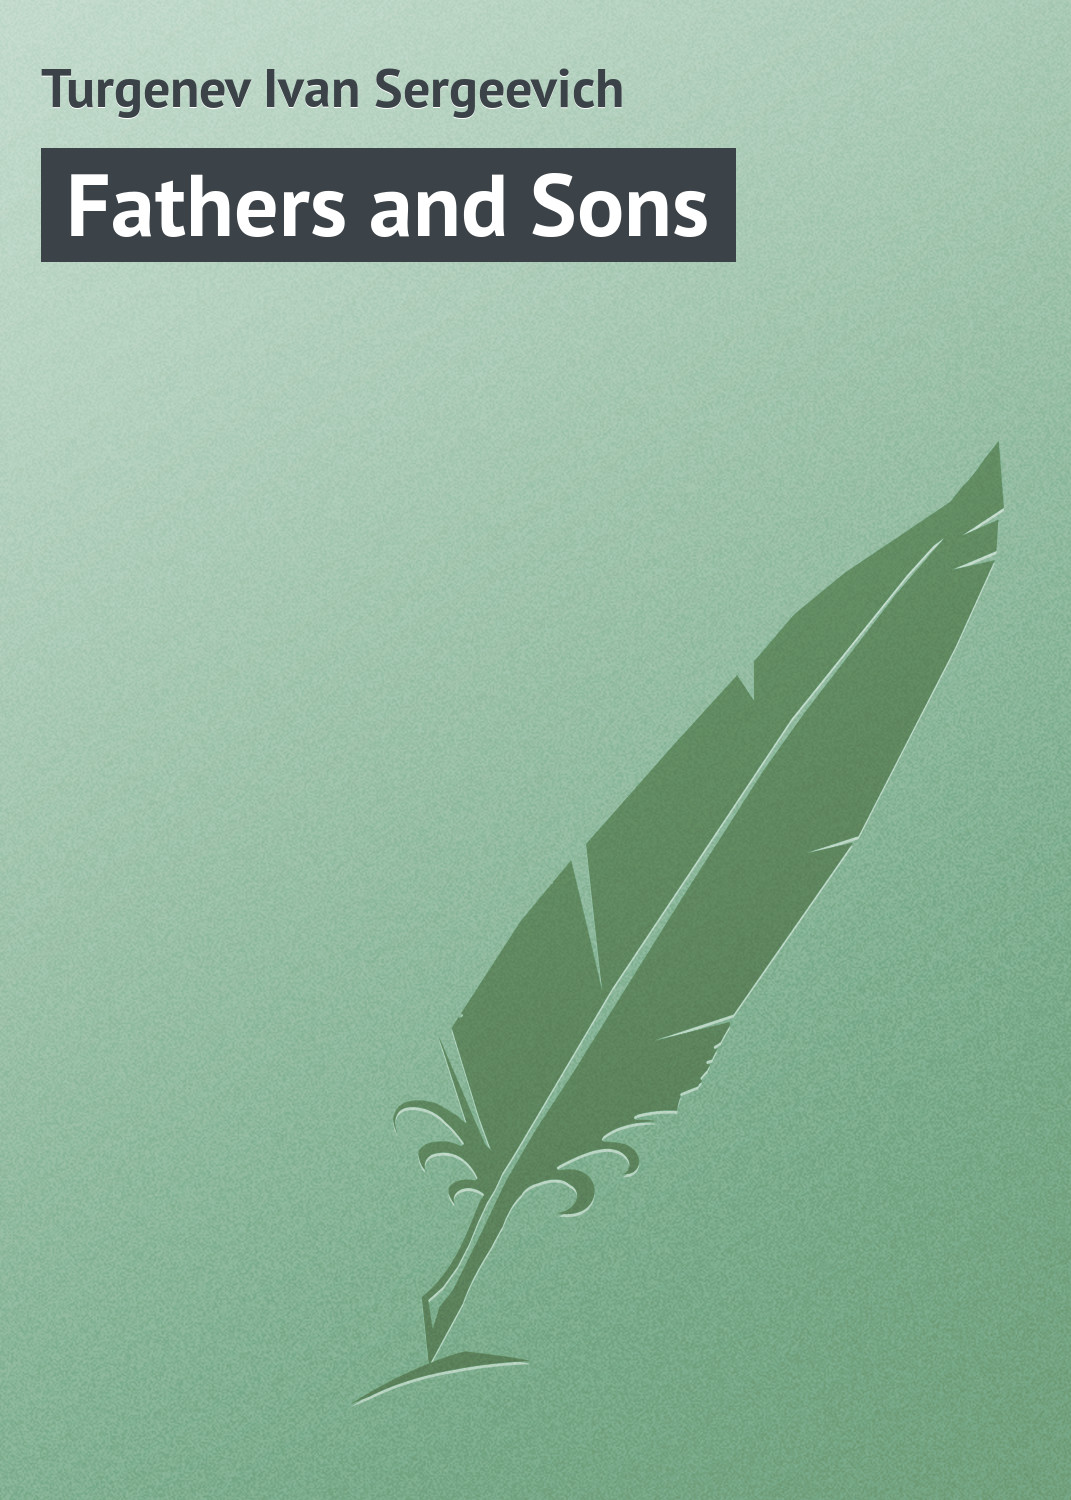 Книга Fathers and Sons из серии , созданная Turgenev Ivan, может относится к жанру Зарубежная классика. Стоимость электронной книги Fathers and Sons с идентификатором 23157667 составляет 5.99 руб.